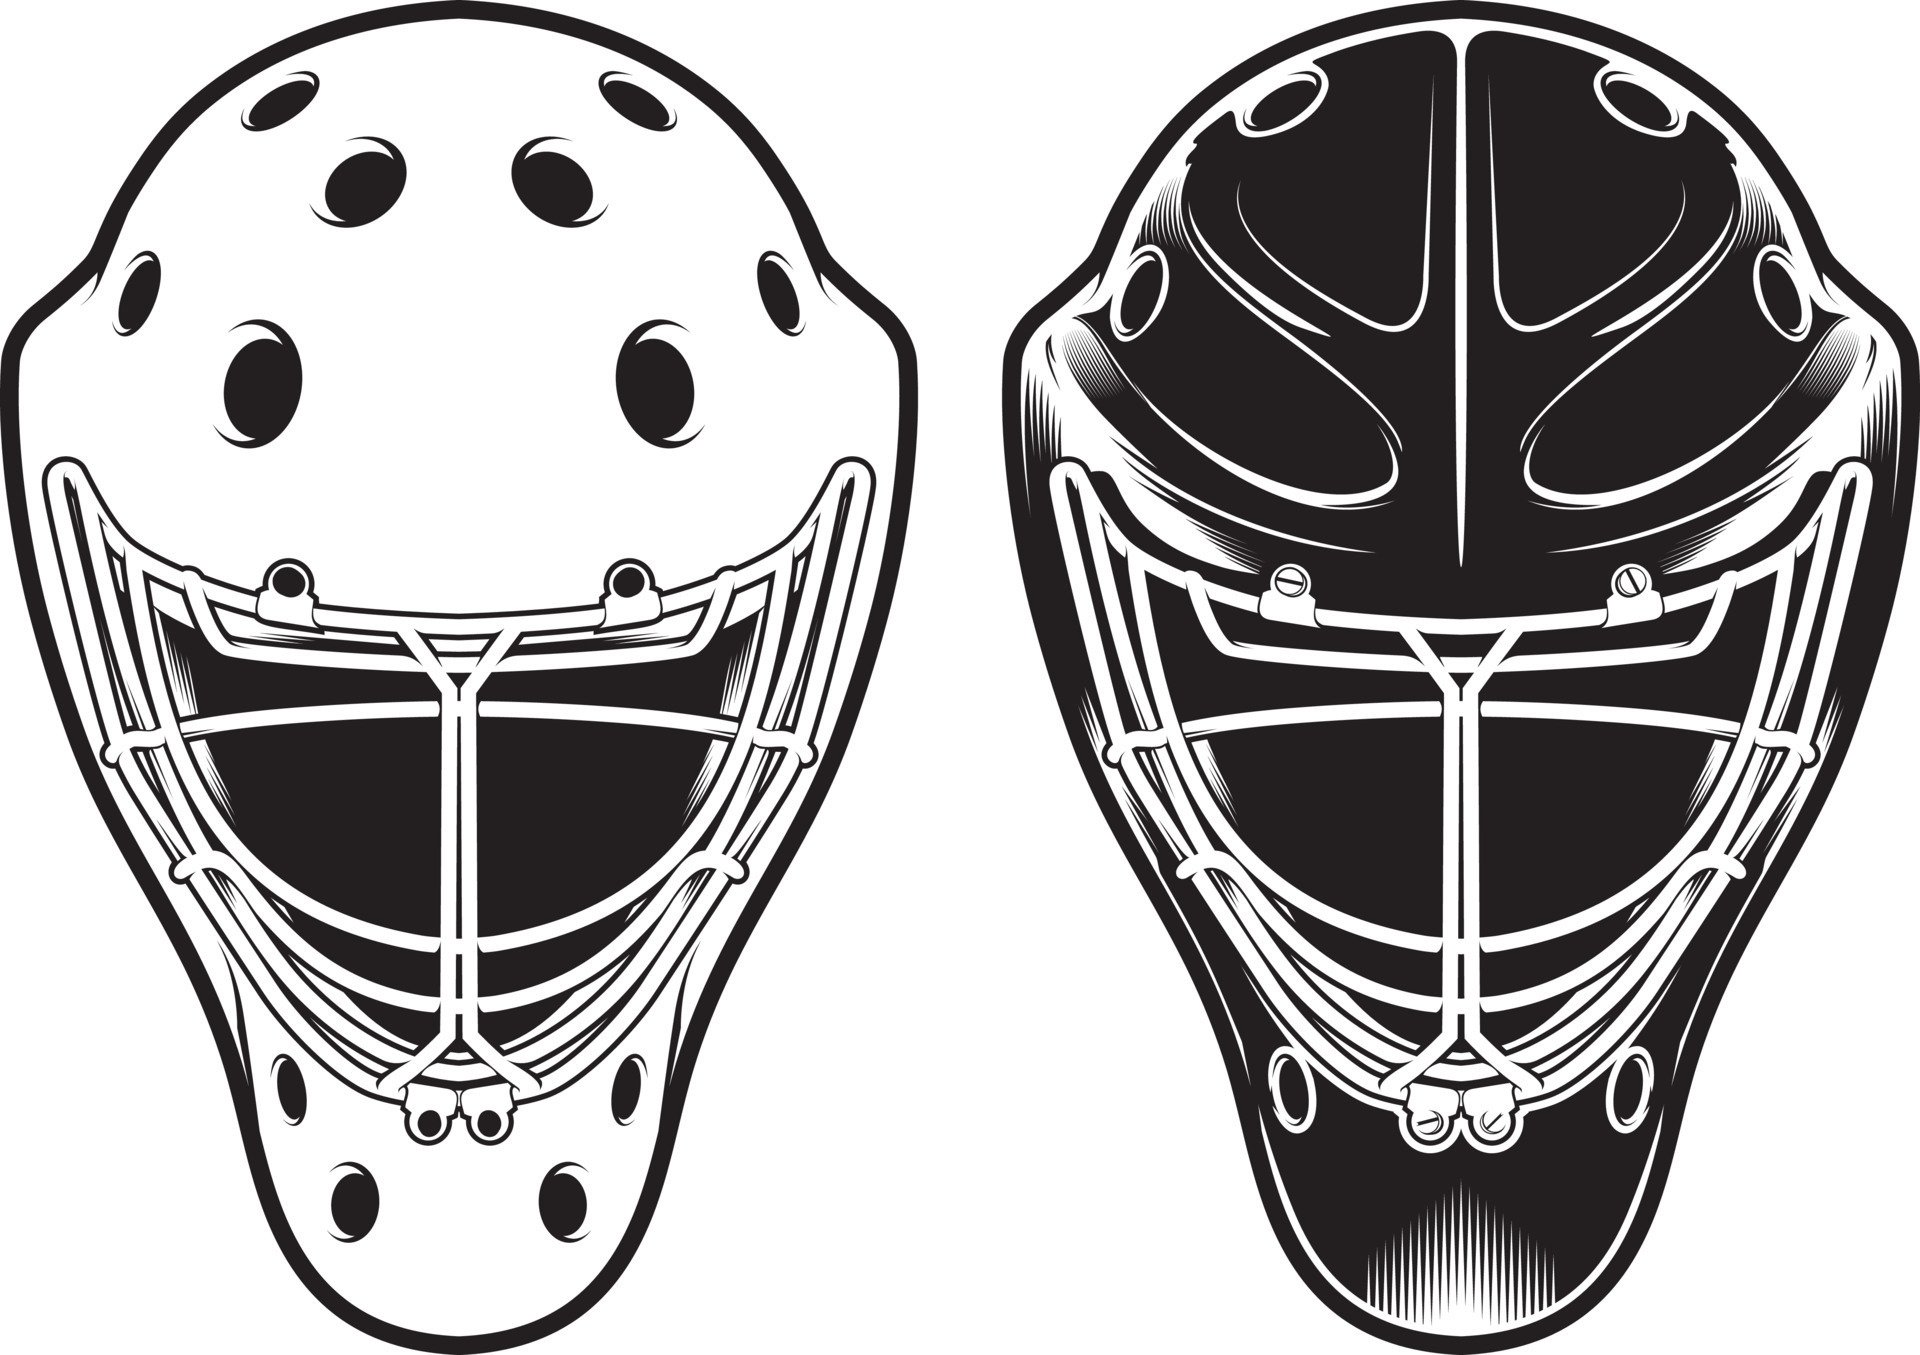 goalie-helmet-hockey-equipment-isolated-on-white-7958943-vector-art-at